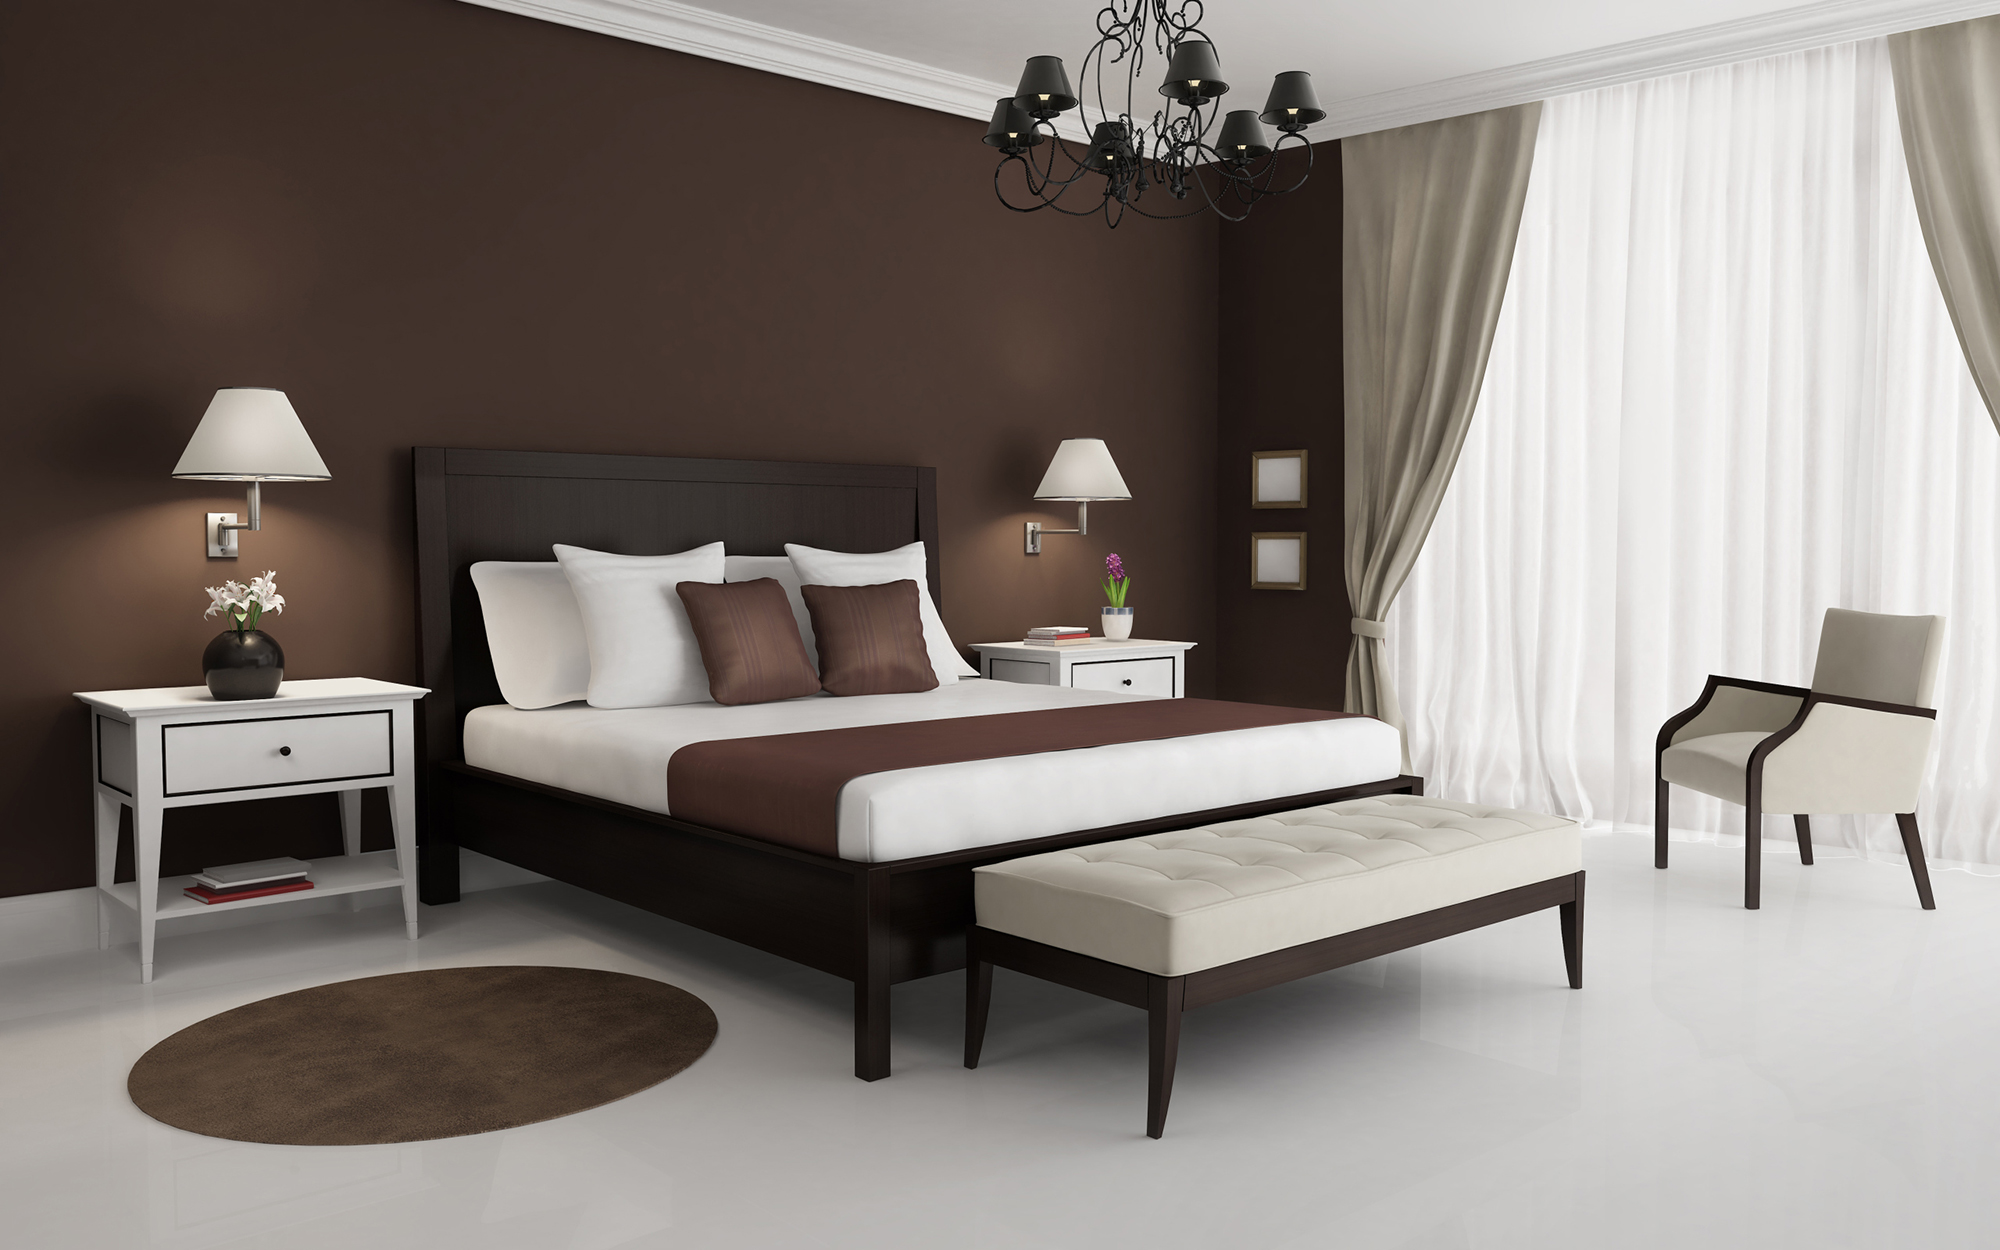 Серые и белые шторы и коричневая мебель